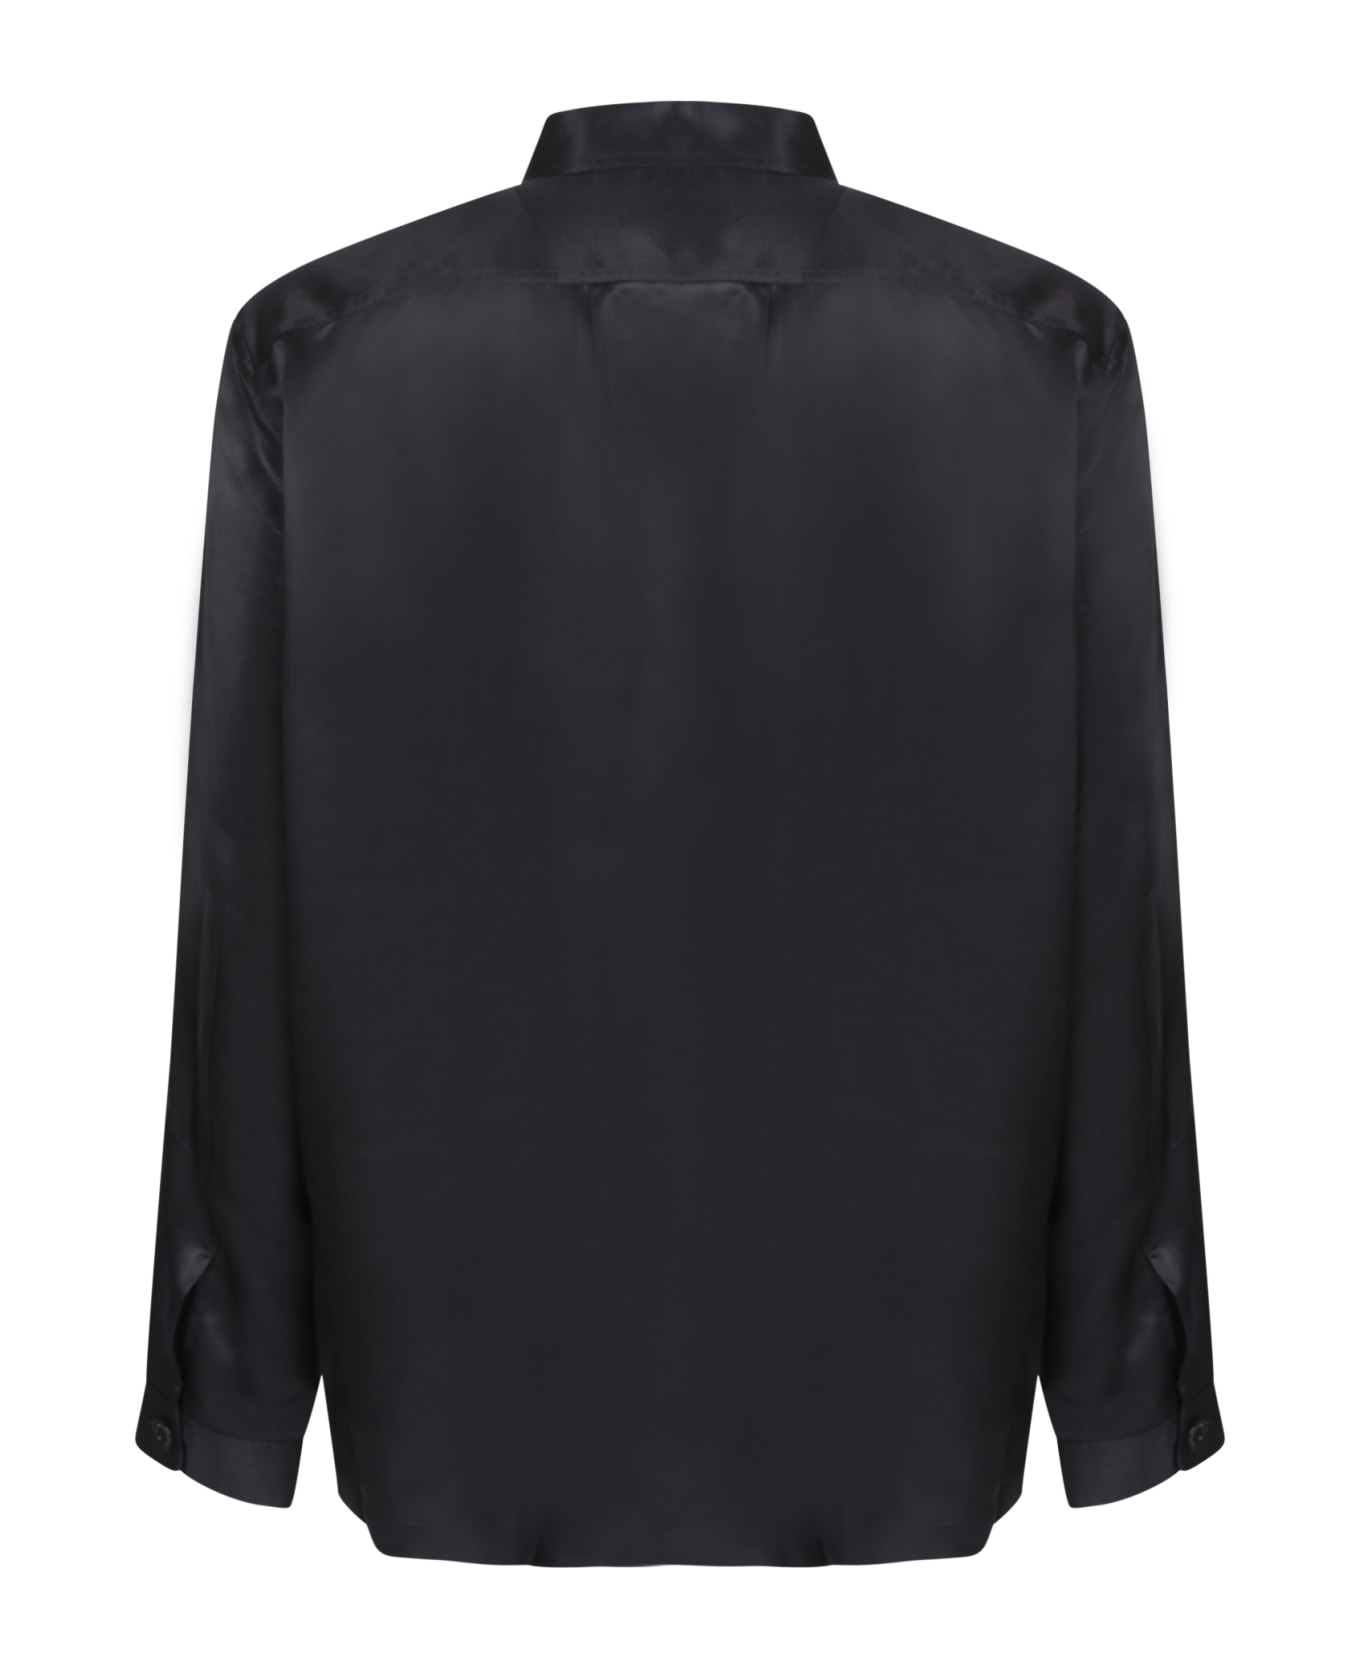 Tom Ford Pockets Black Shirt - Black シャツ